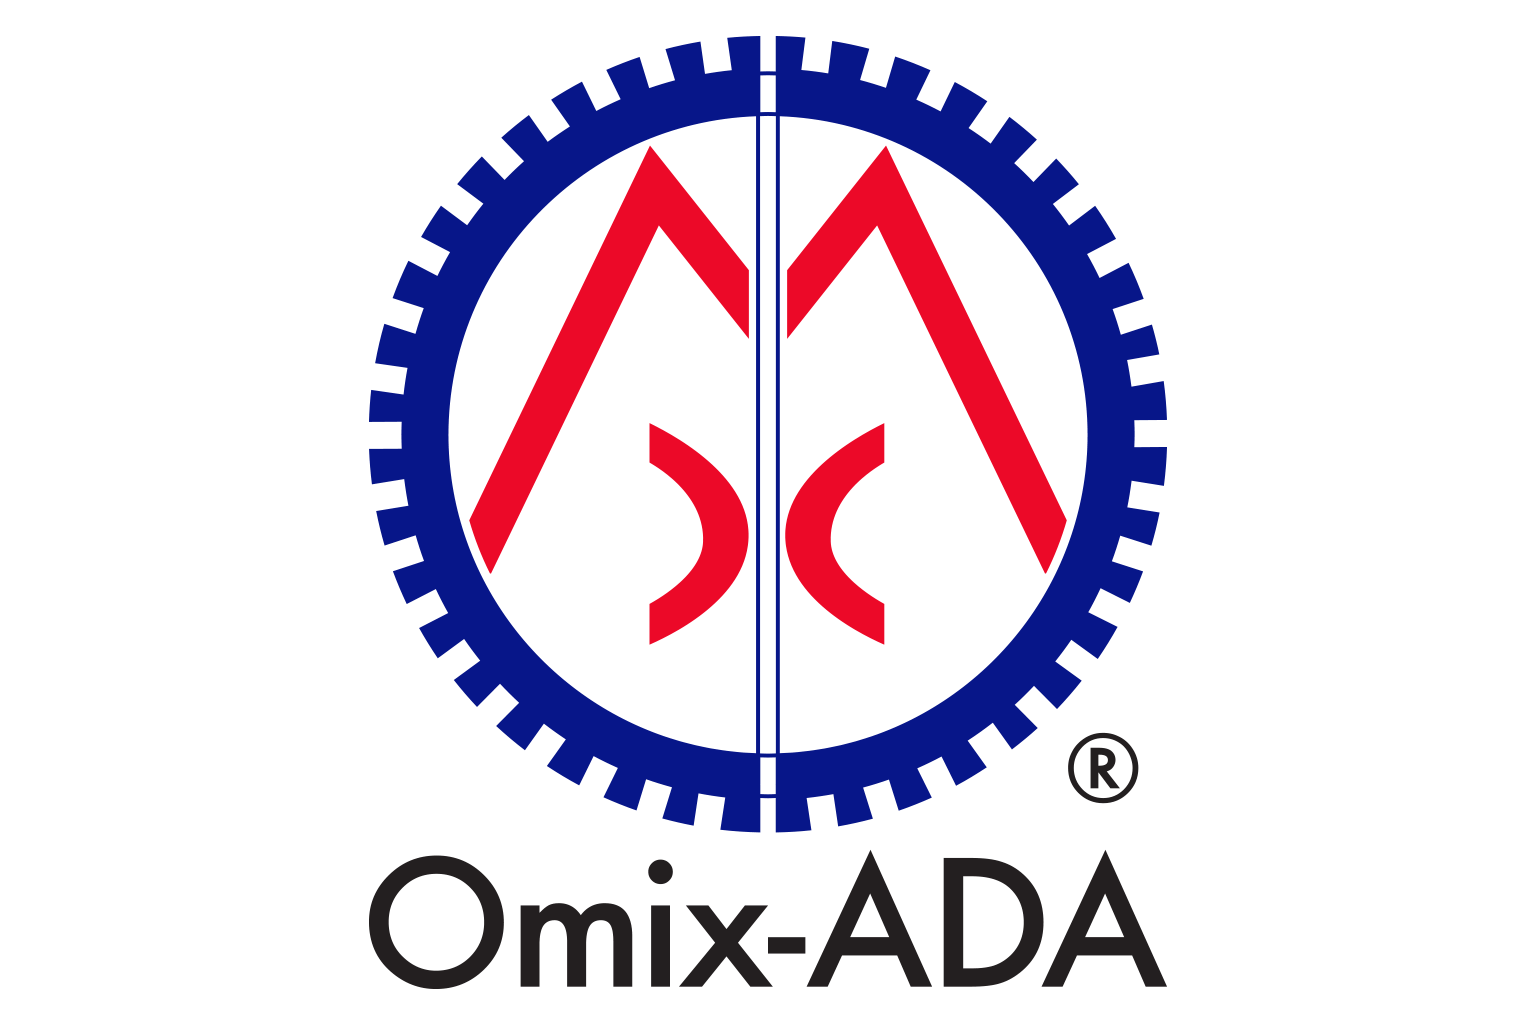 Omix-ADA